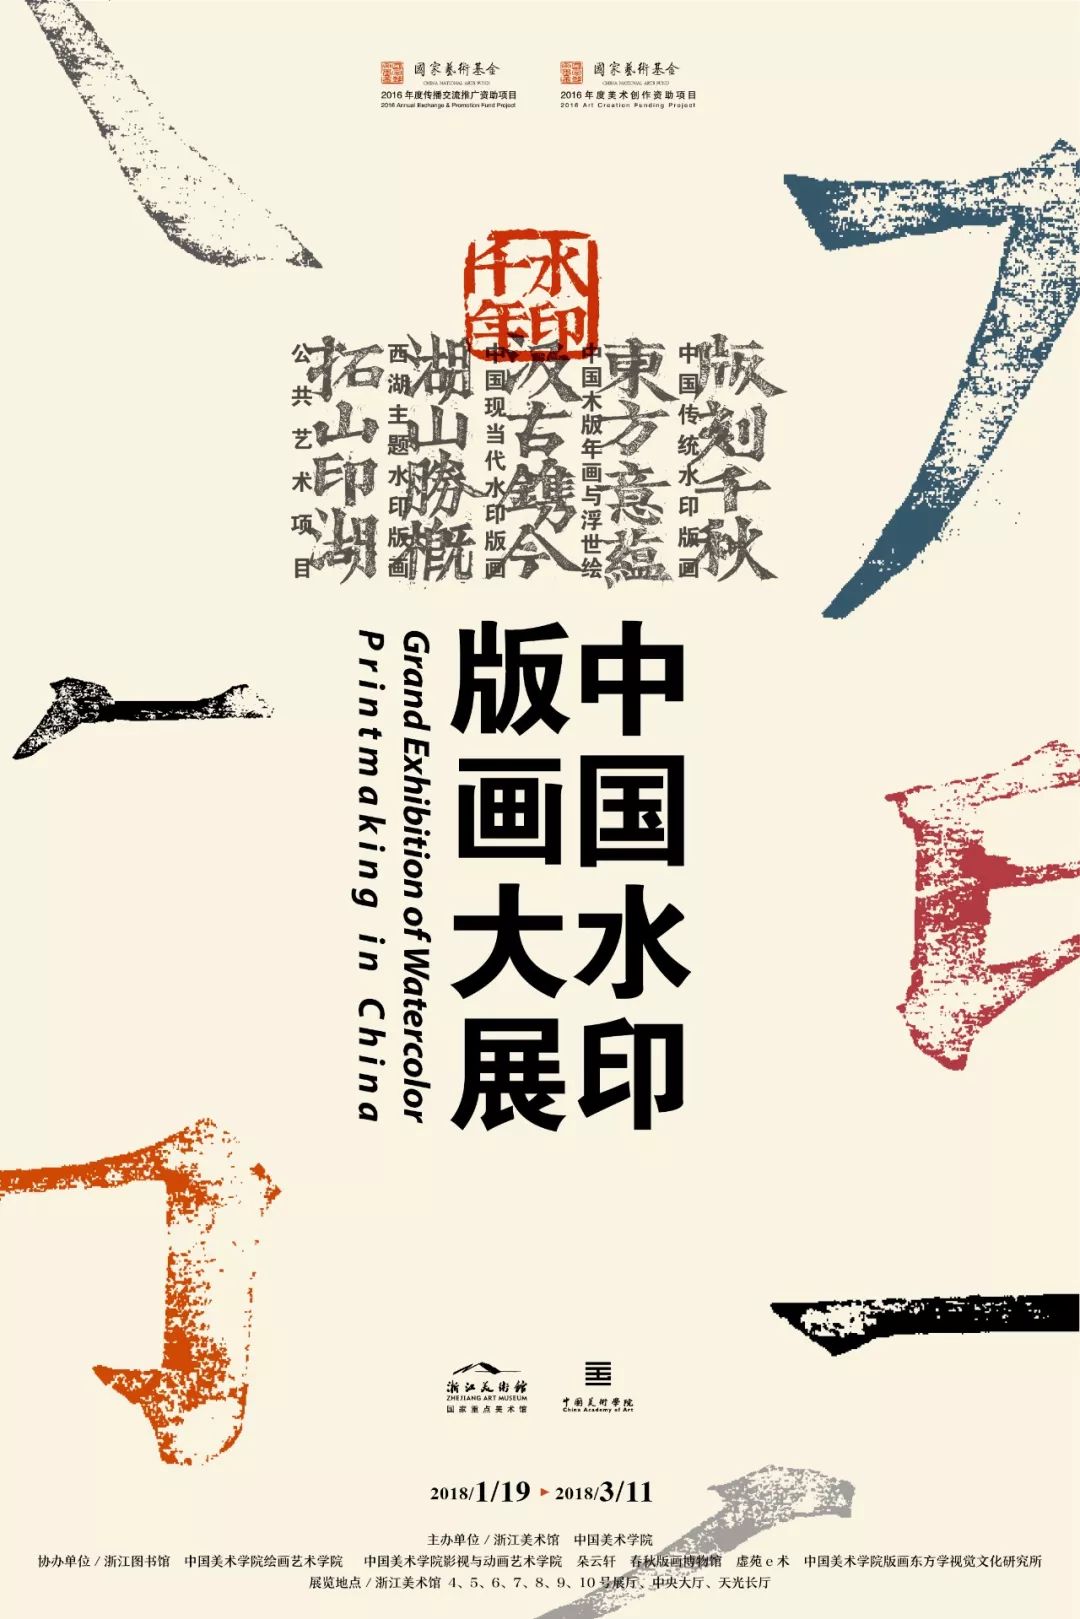 新年特辑| 中国木版年画影响了日本浮世绘？“水印千年”——东方意蕴之中国木版年画与浮世绘